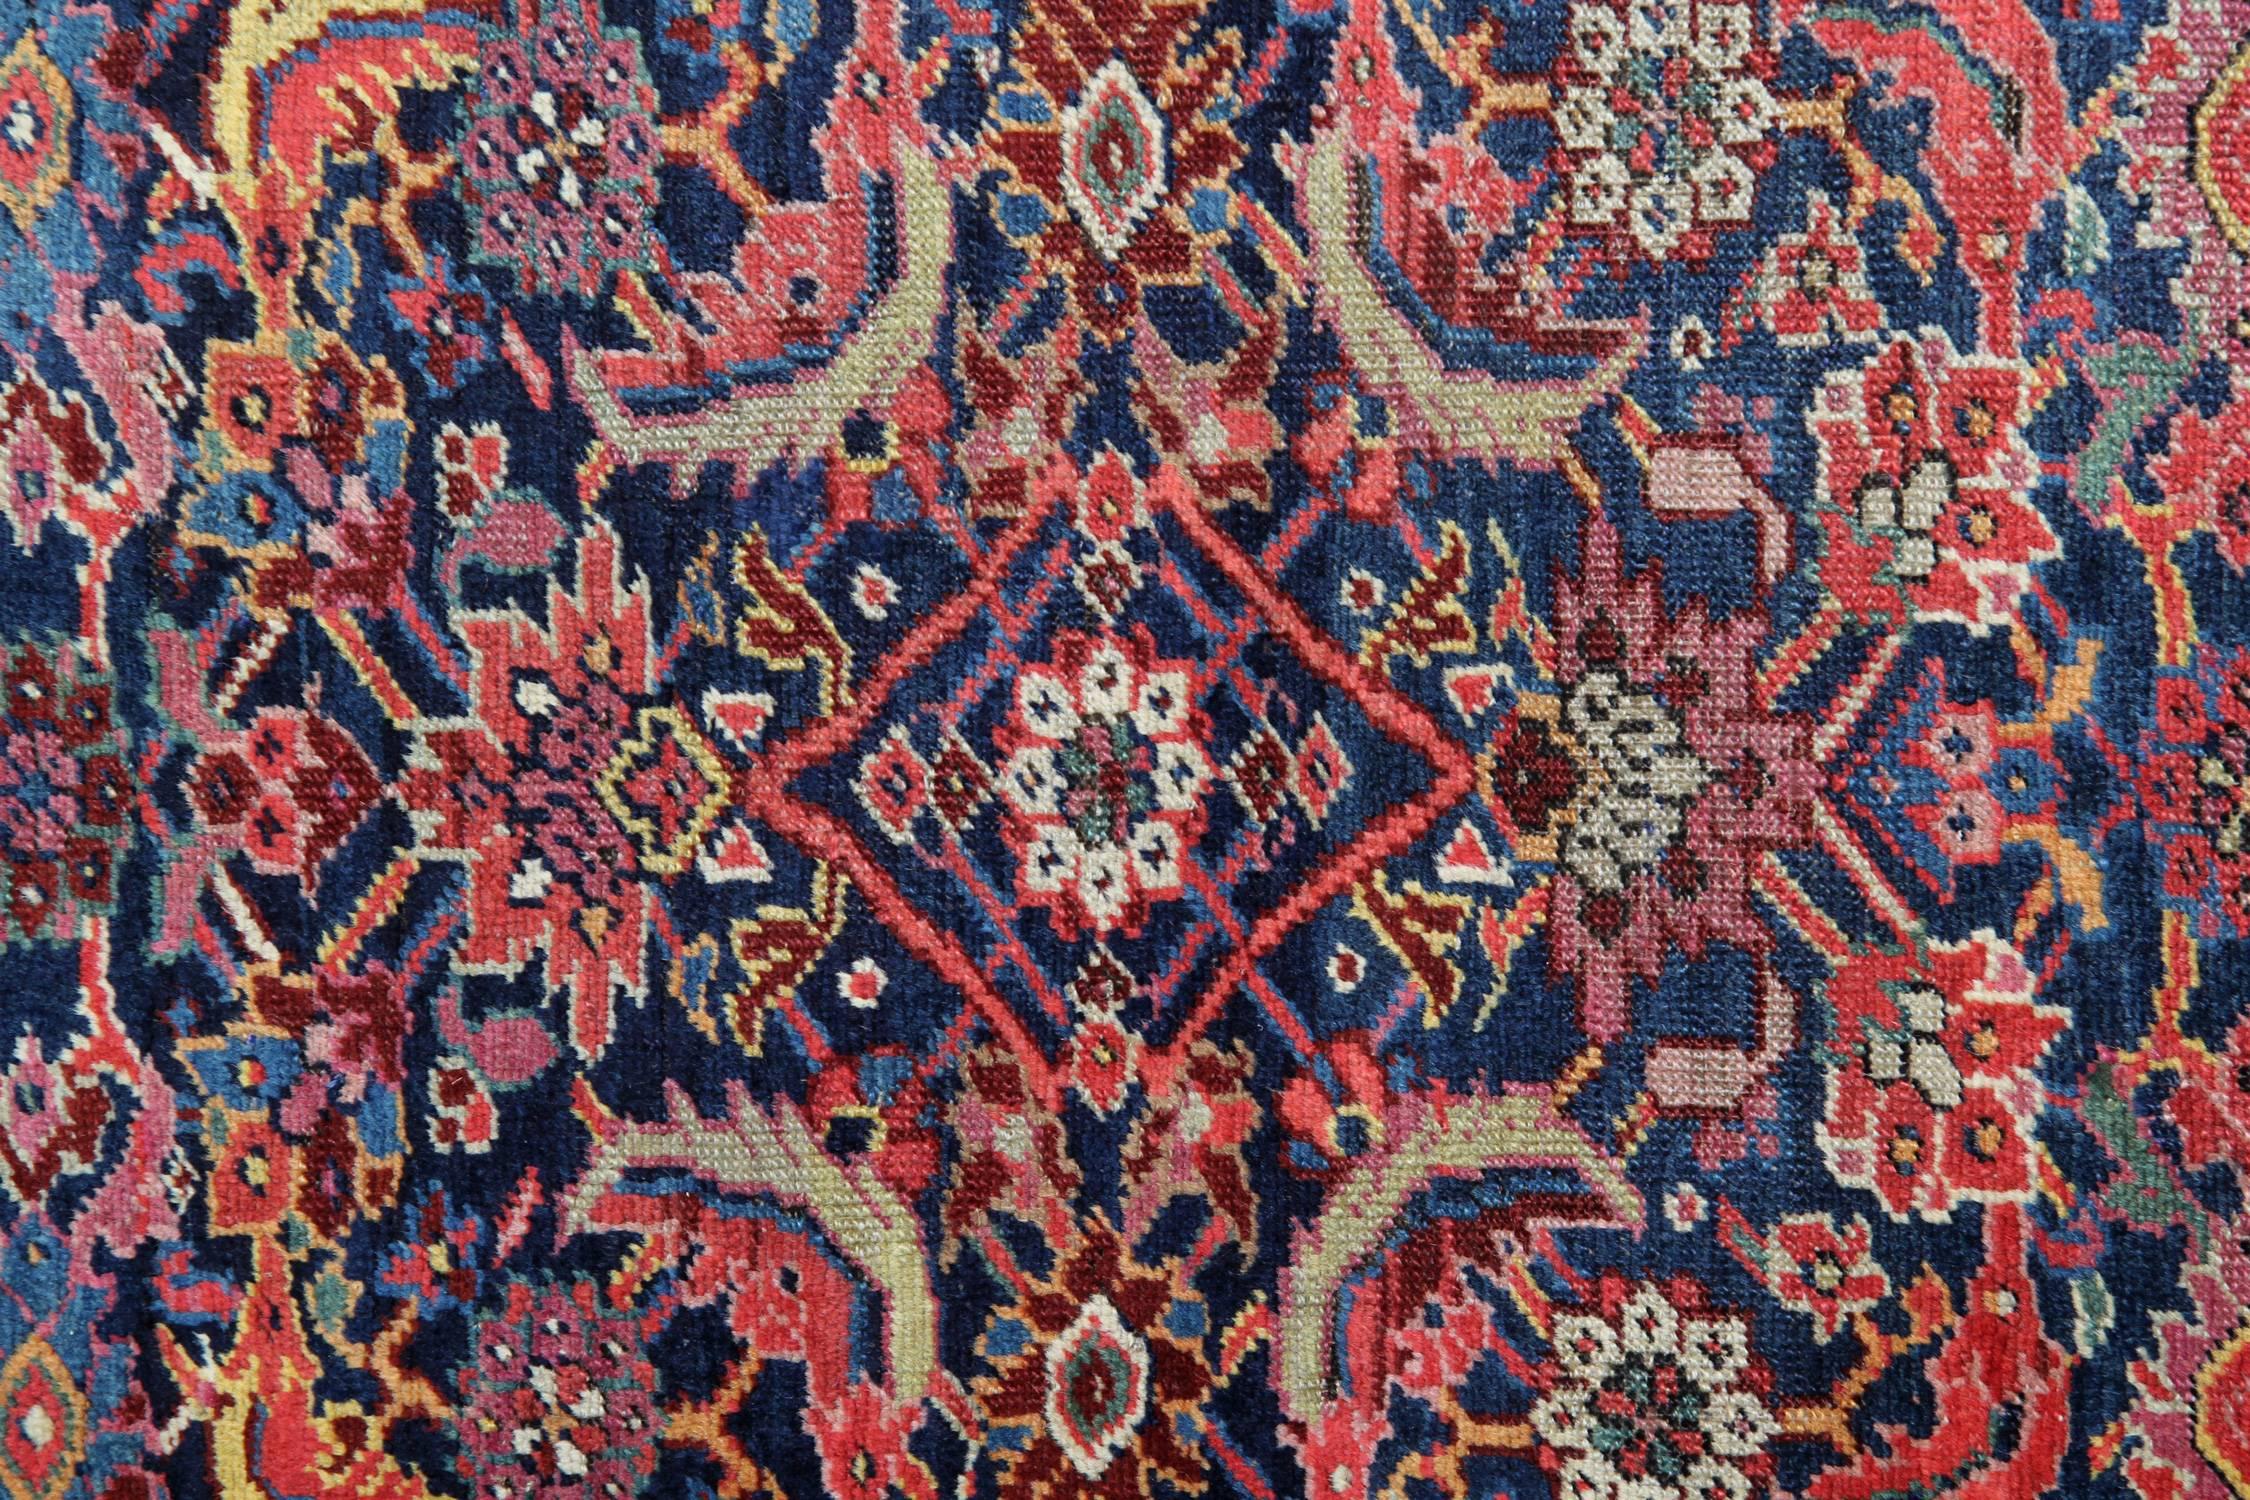 Kazak Rare Antique Rug Caucasian Runner Handmade Carpet Living Room Rugs Stair Runner For Sale